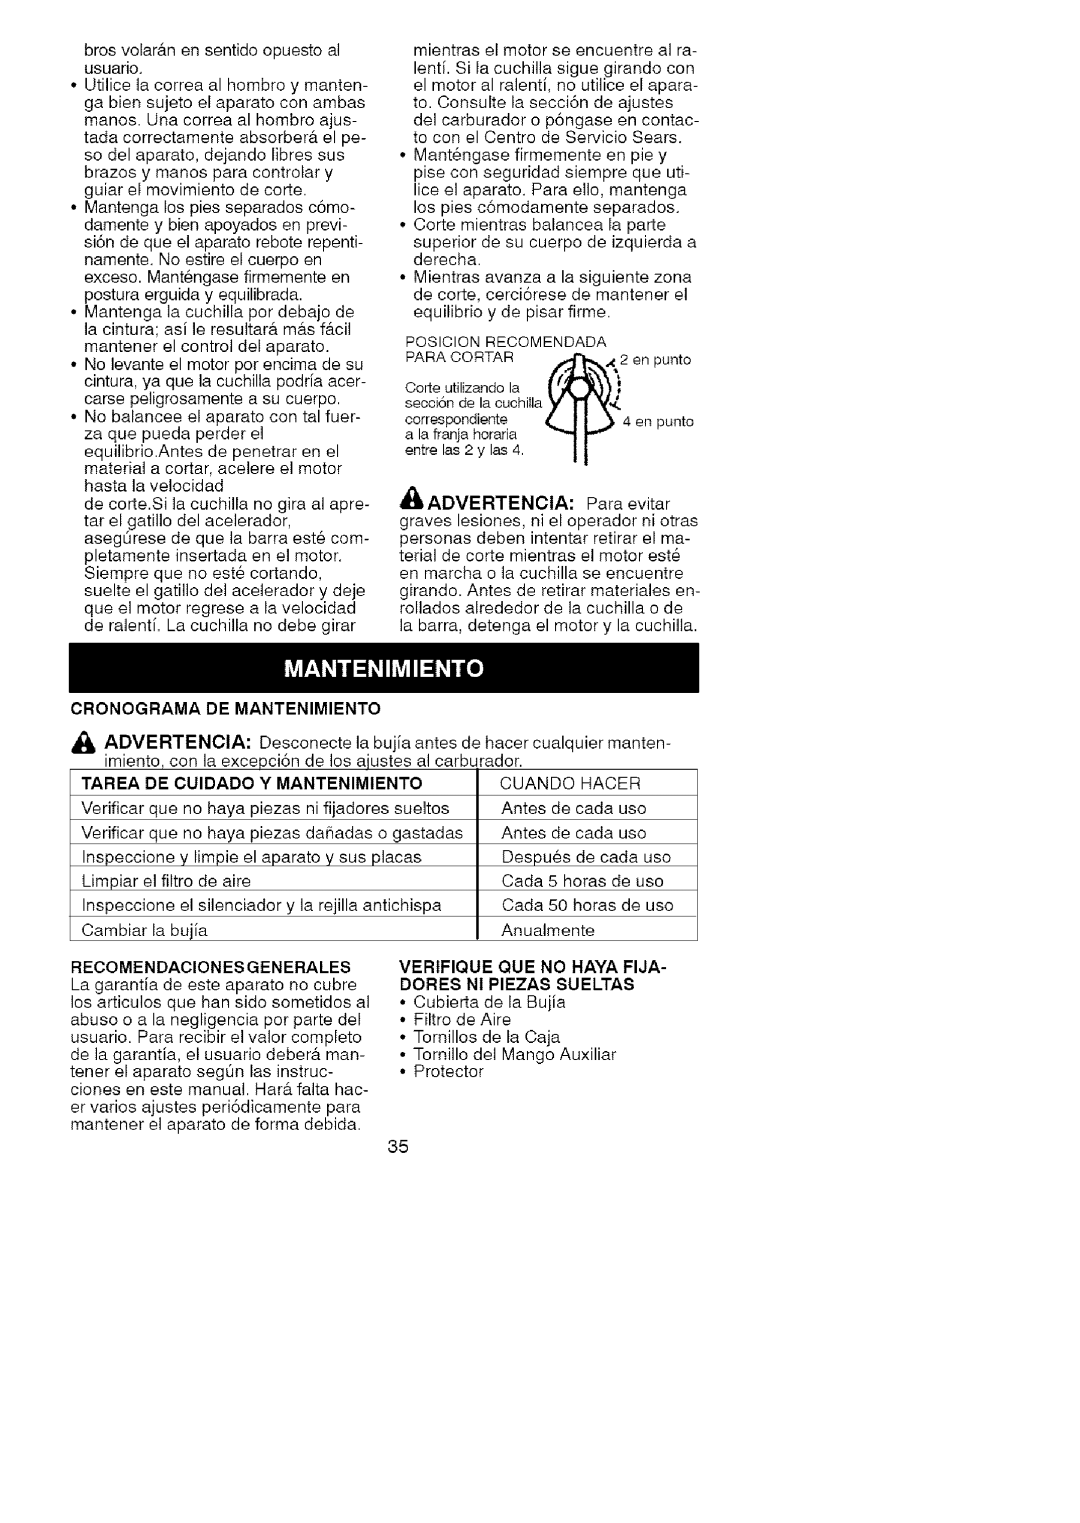 Craftsman 358.7958 manual Cronograma De Mantenimiento, Tarea, De Cuidado, Y Mantenimiento, Recomendaciones Generales 